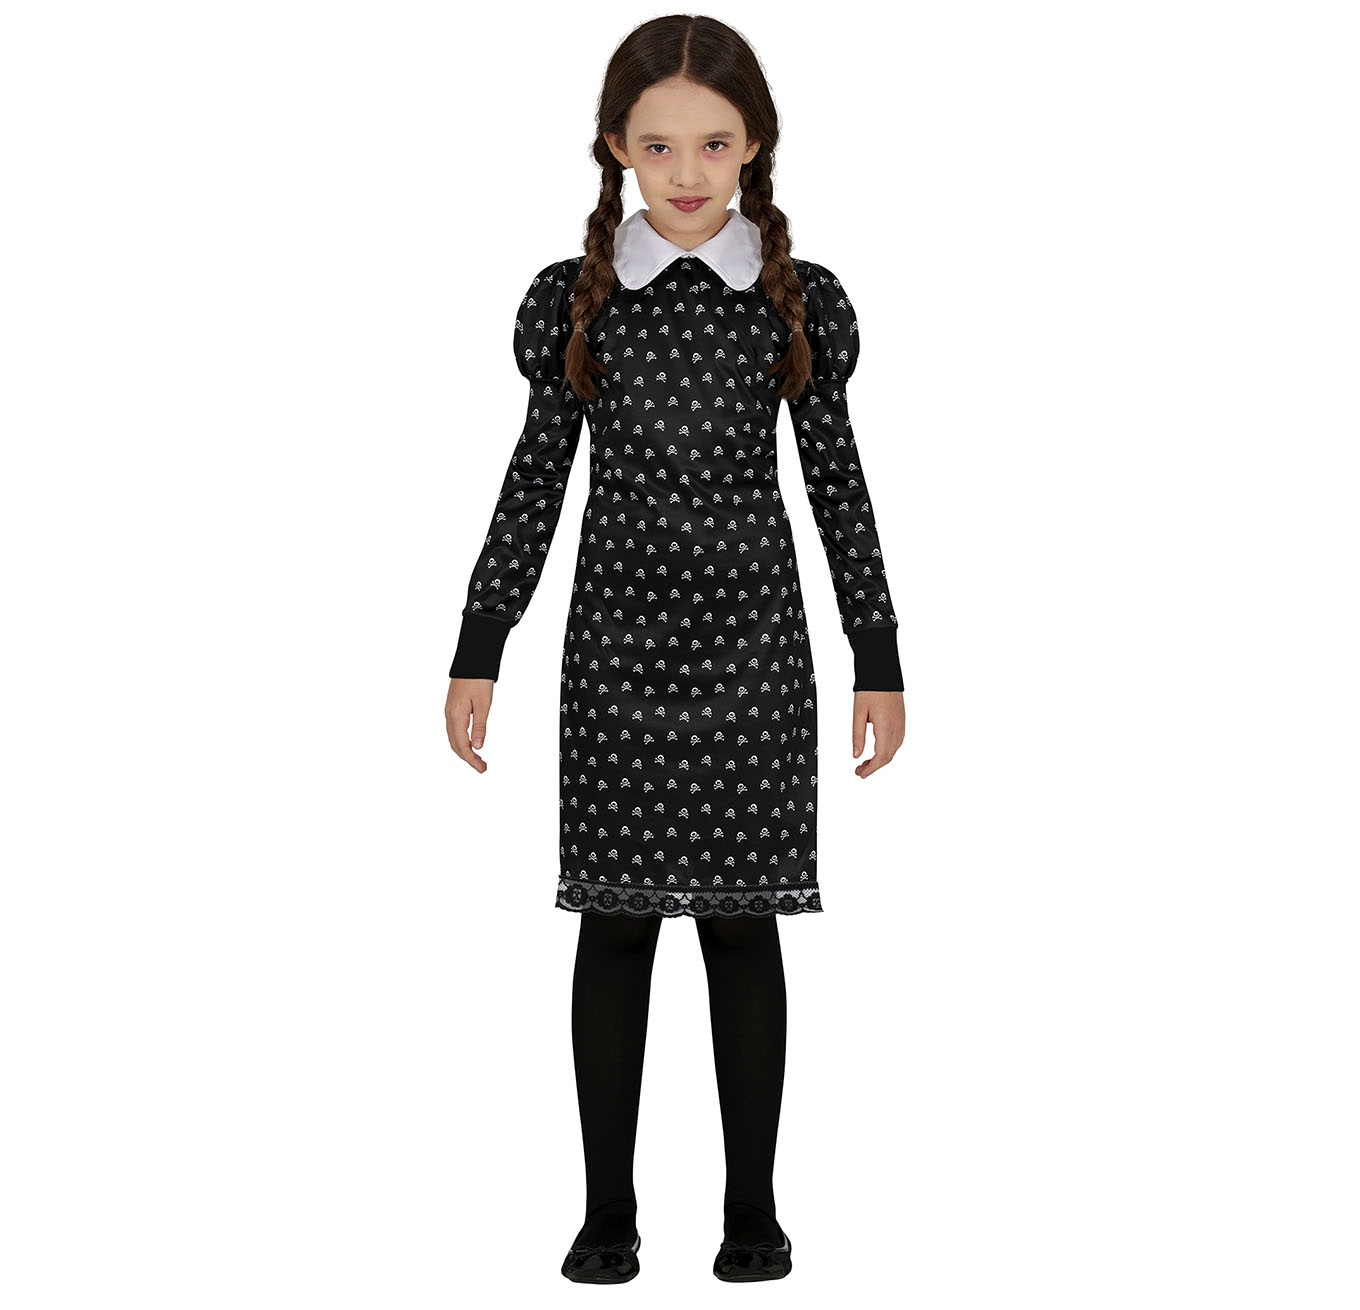 Levně Guirca Dívčí kostým - Wednesday šaty s potiskem